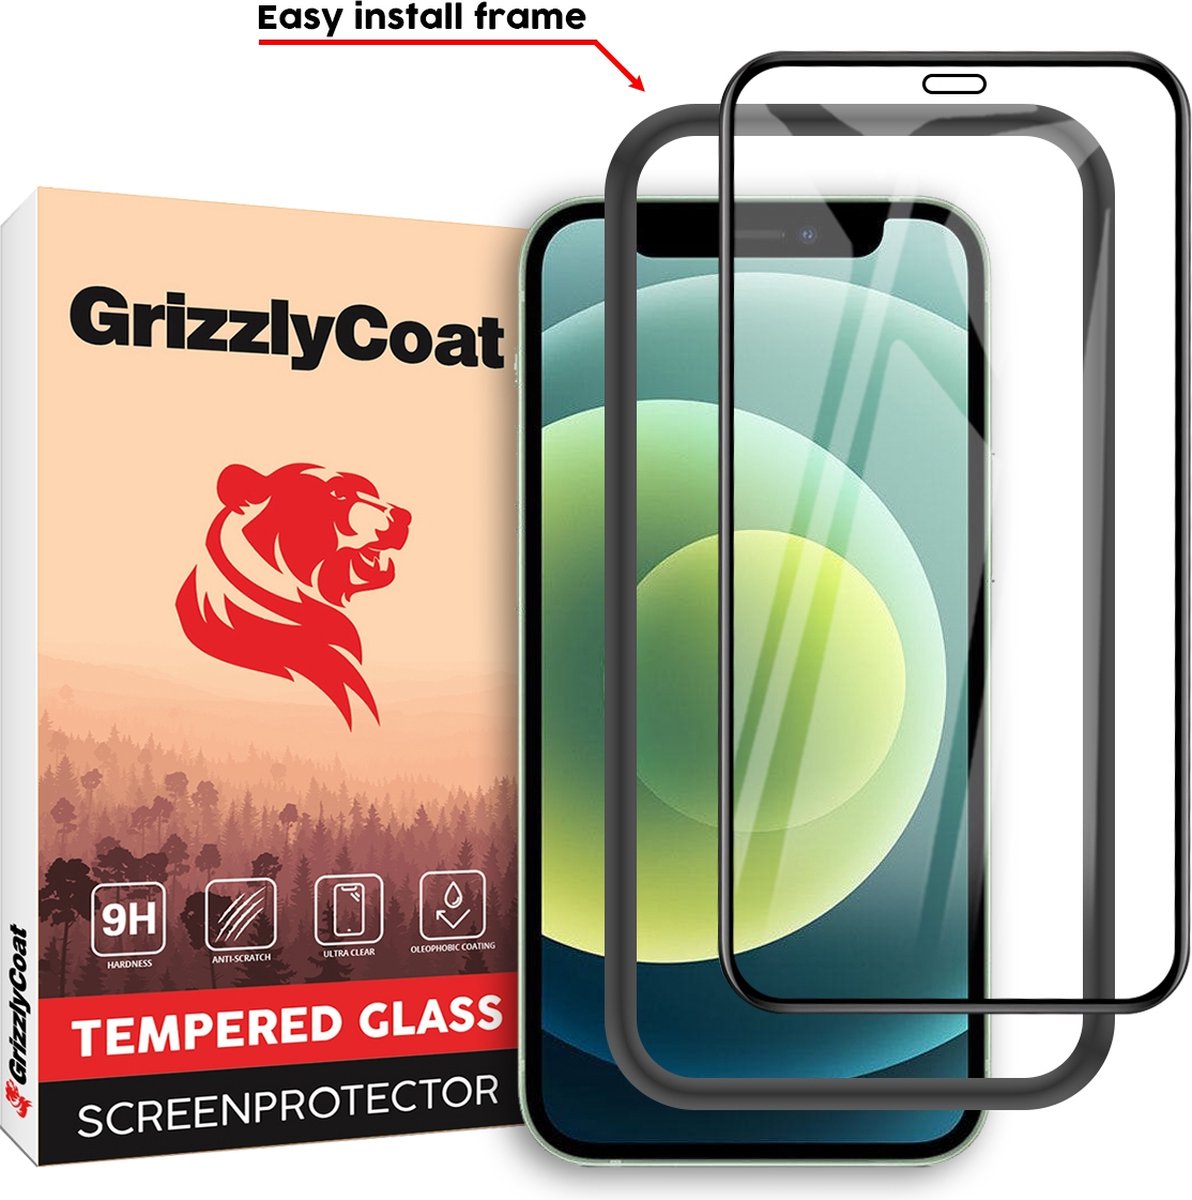 GrizzlyCoat - Screenprotector geschikt voor Apple iPhone 12 Mini Glazen | GrizzlyCoat Easy Fit Screenprotector - Case Friendly + Installatie Frame - Zwart